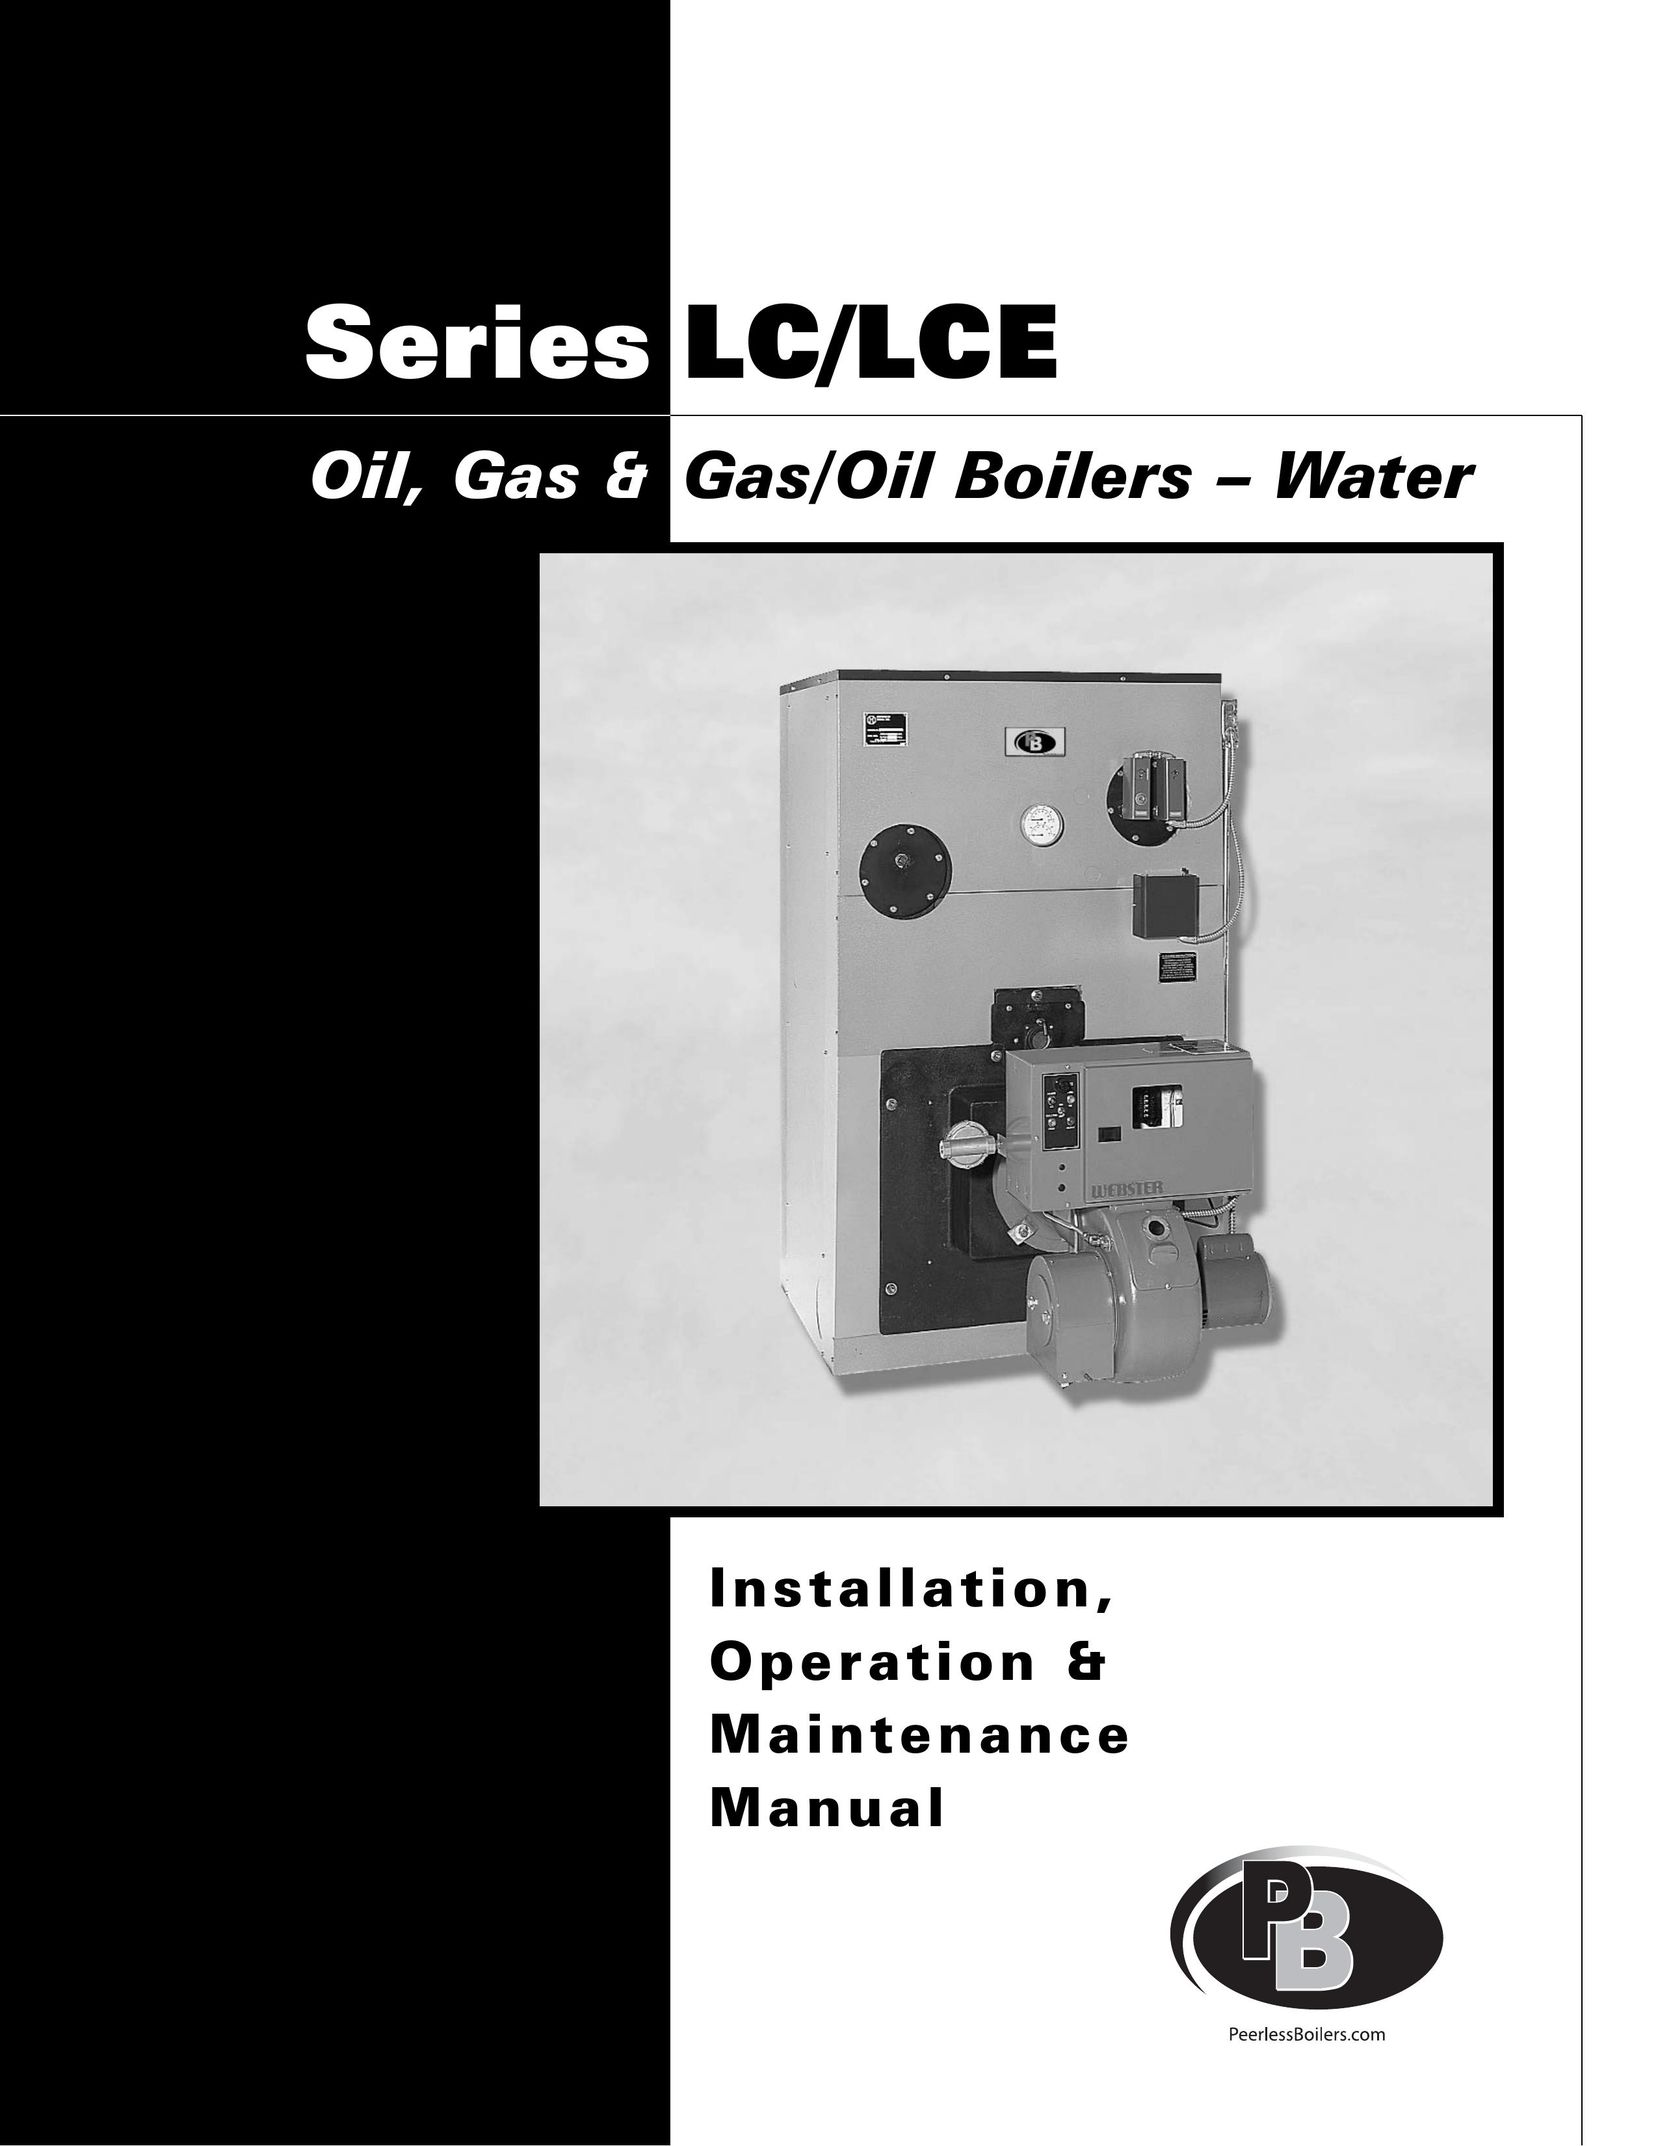 PB Heat Gas/Oil Boilers Boiler User Manual